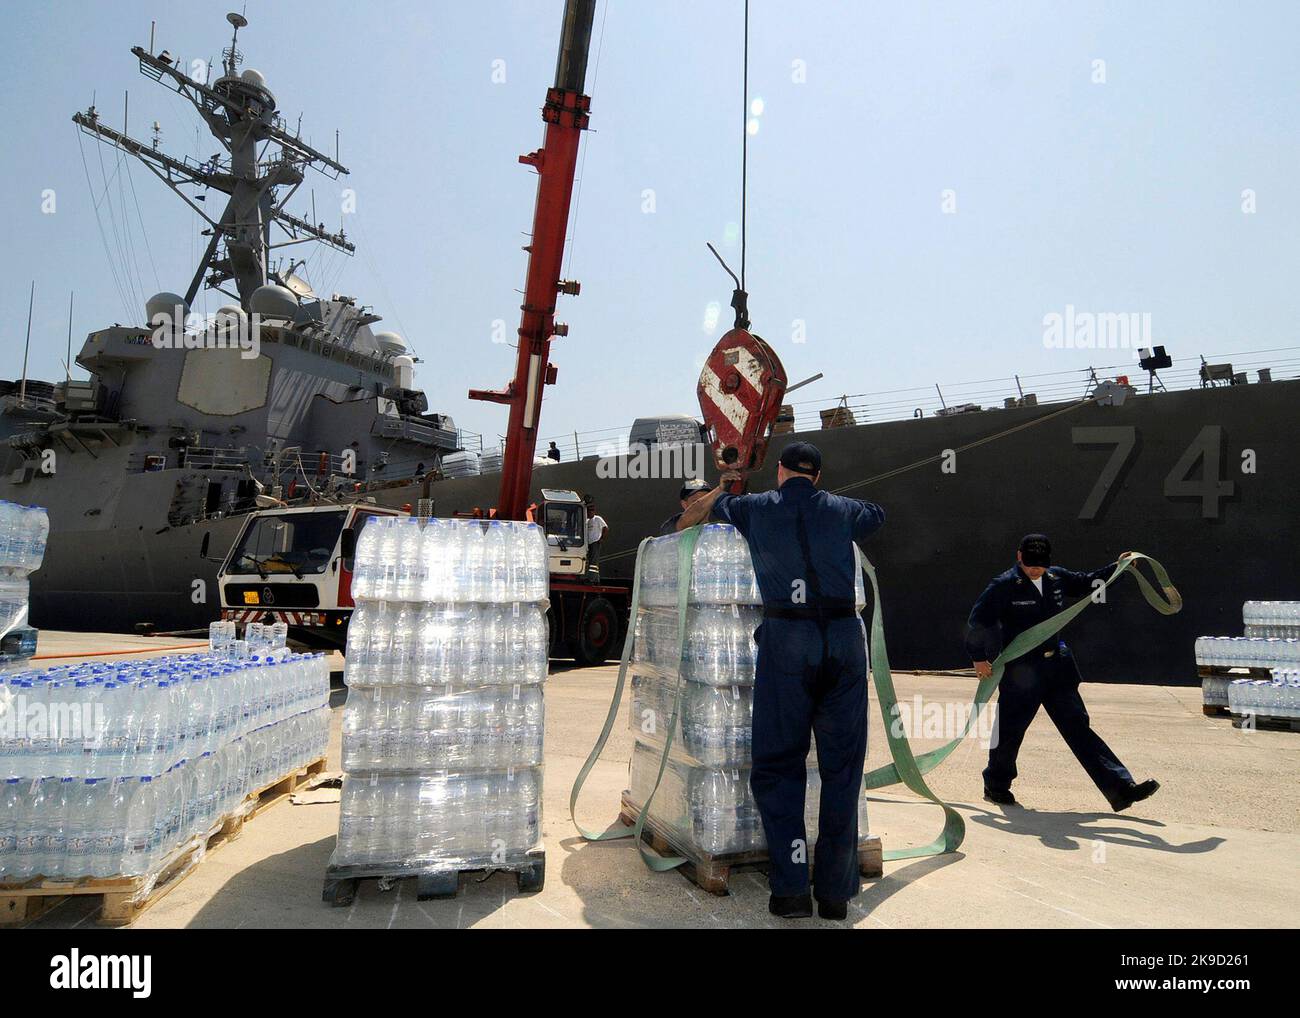 L'acqua in bottiglia viene caricata a bordo del cacciatorpediniere missilistico guidato USS McFaul (DDG 74). Quasi 55 tonnellate di forniture sono state caricate nell'ambito dell'assistenza umanitaria alla Repubblica di Georgia a seguito del conflitto tra le forze russe e georgiane. L'assistenza contribuirà ad alleviare le sofferenze umane nella Repubblica di Georgia. Marina statunitense Foto Stock